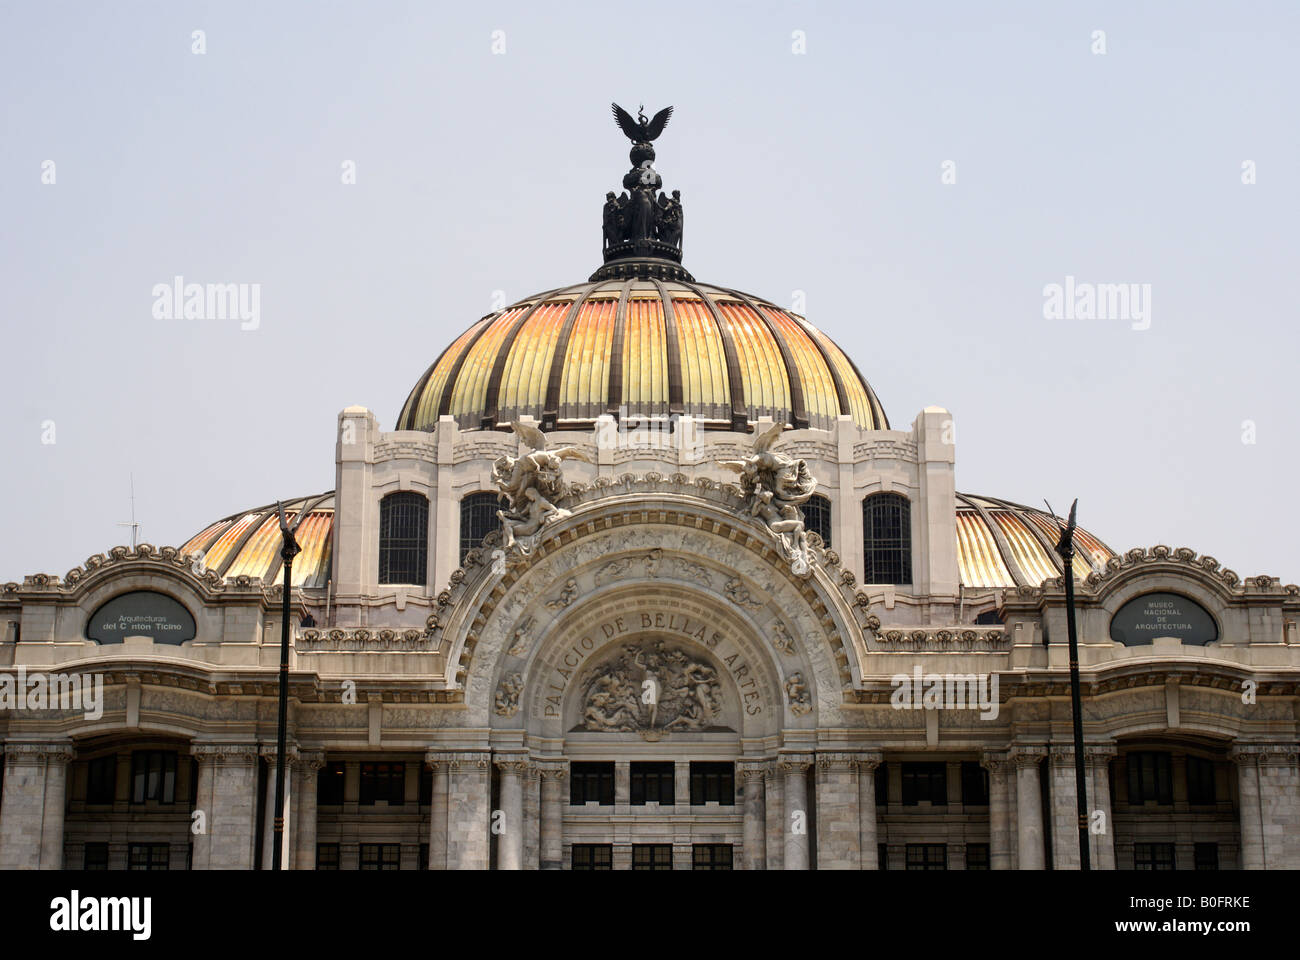 Palacio de Bellas Artes, in Mexico city Stock Photo